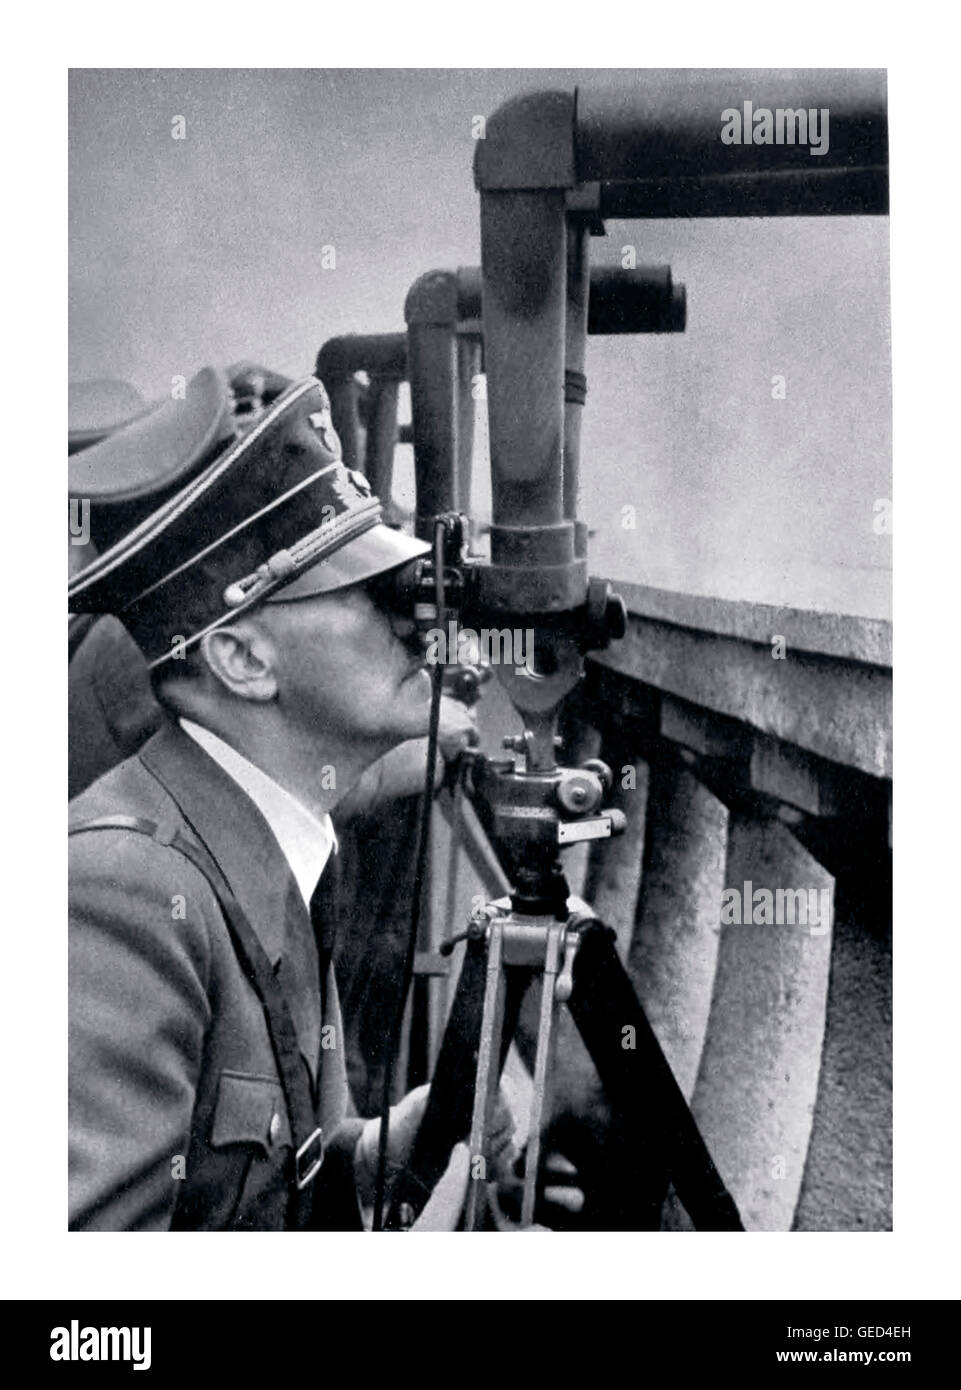 ADOLF HITLER WARSAW POLAND INVASION OCCUPATION  SIEGE Adolf Hitler watches through binocular periscope a battle being waged outside Warsaw during siege in 1939. Stock Photo